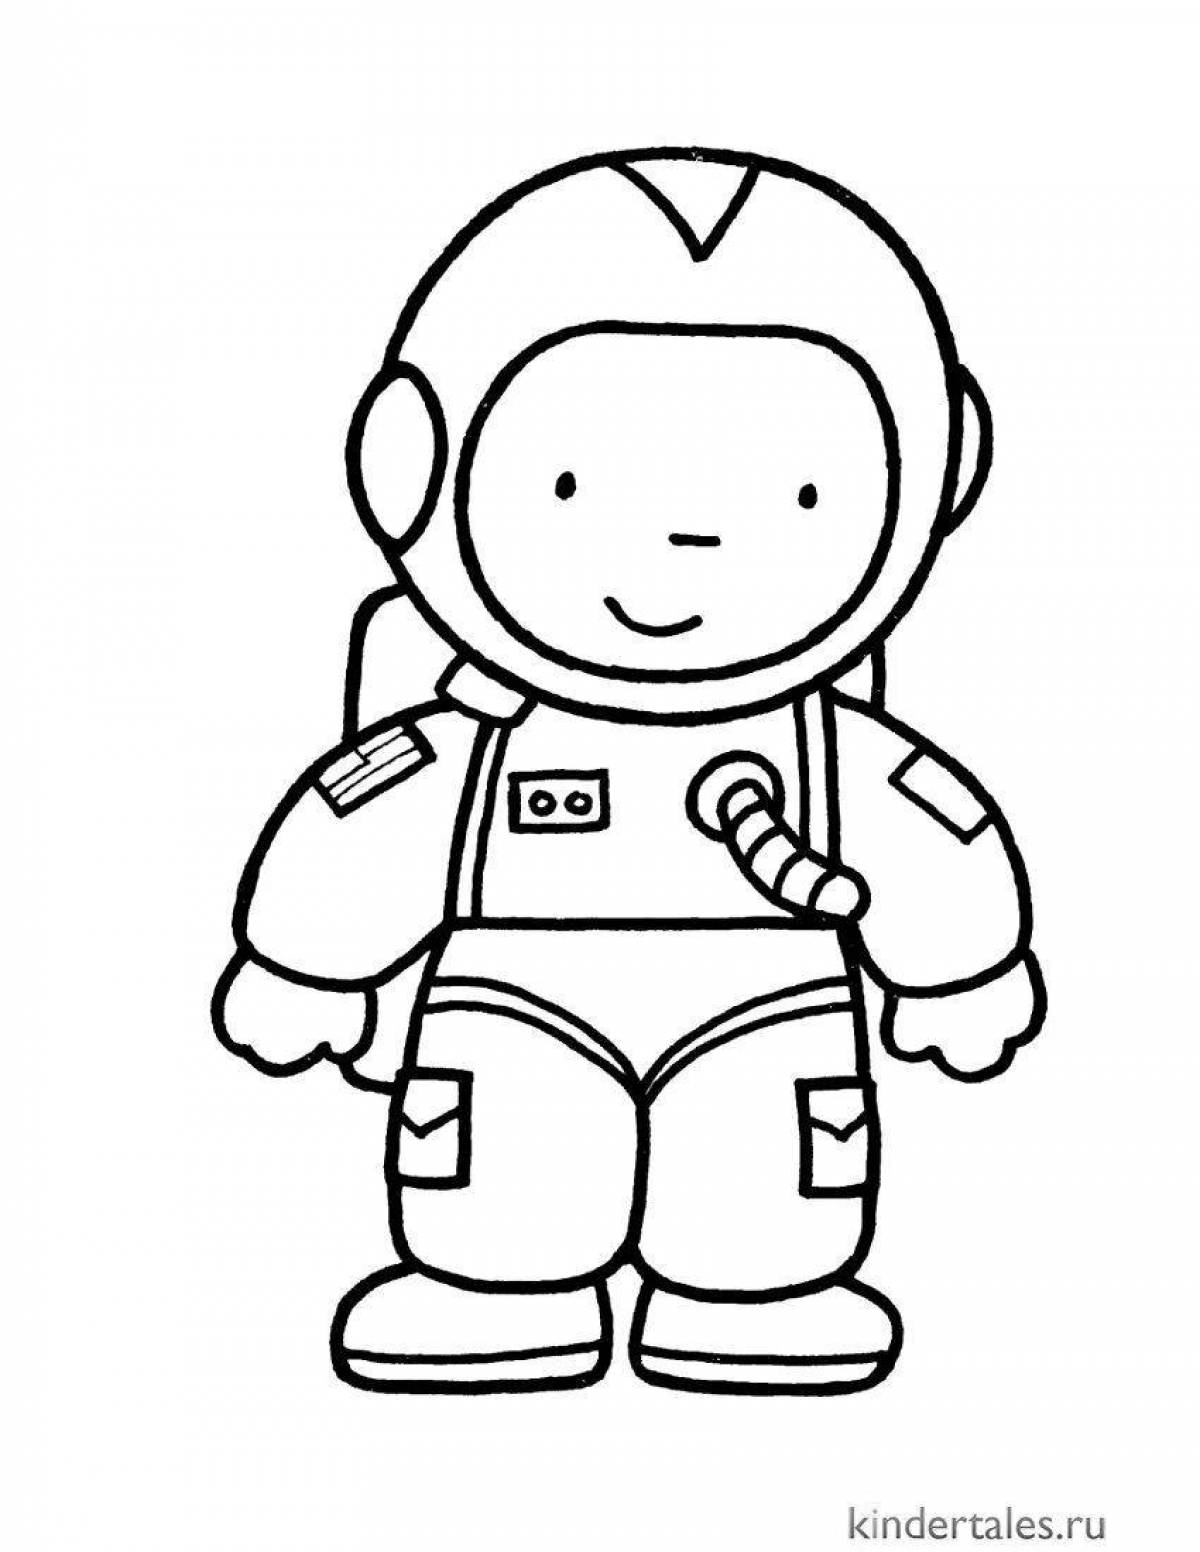 Игривая страница раскраски космонавта для детей